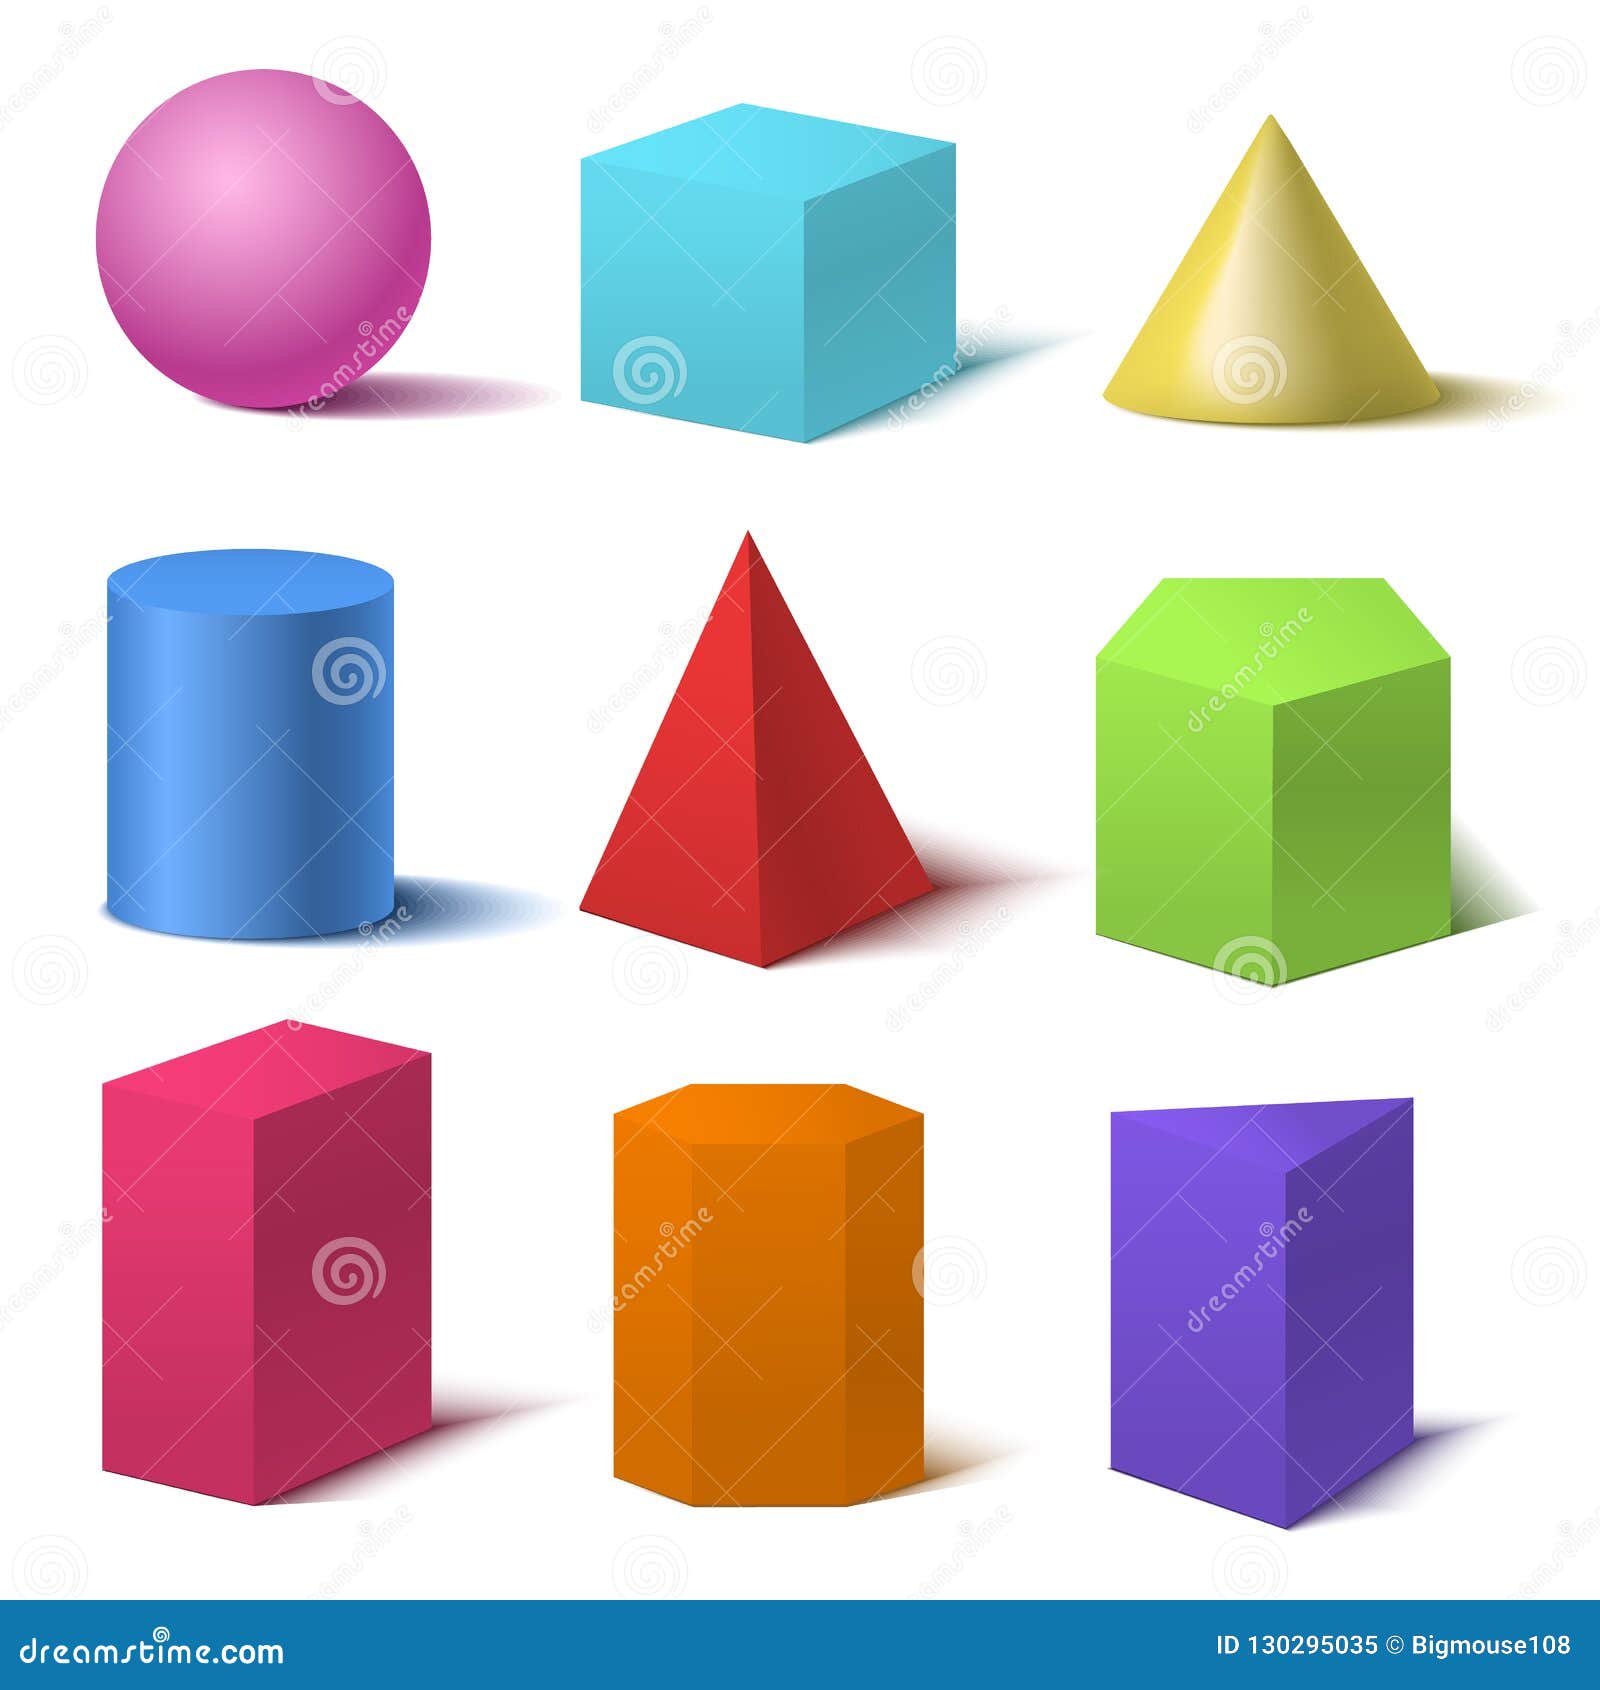 Сфера цилиндр куб конус пирамида. Объемные геометрические фигуры. Цветные объемные фигуры. Объемные геометрические фигуры для детей. Шар Геометрическая фигура.